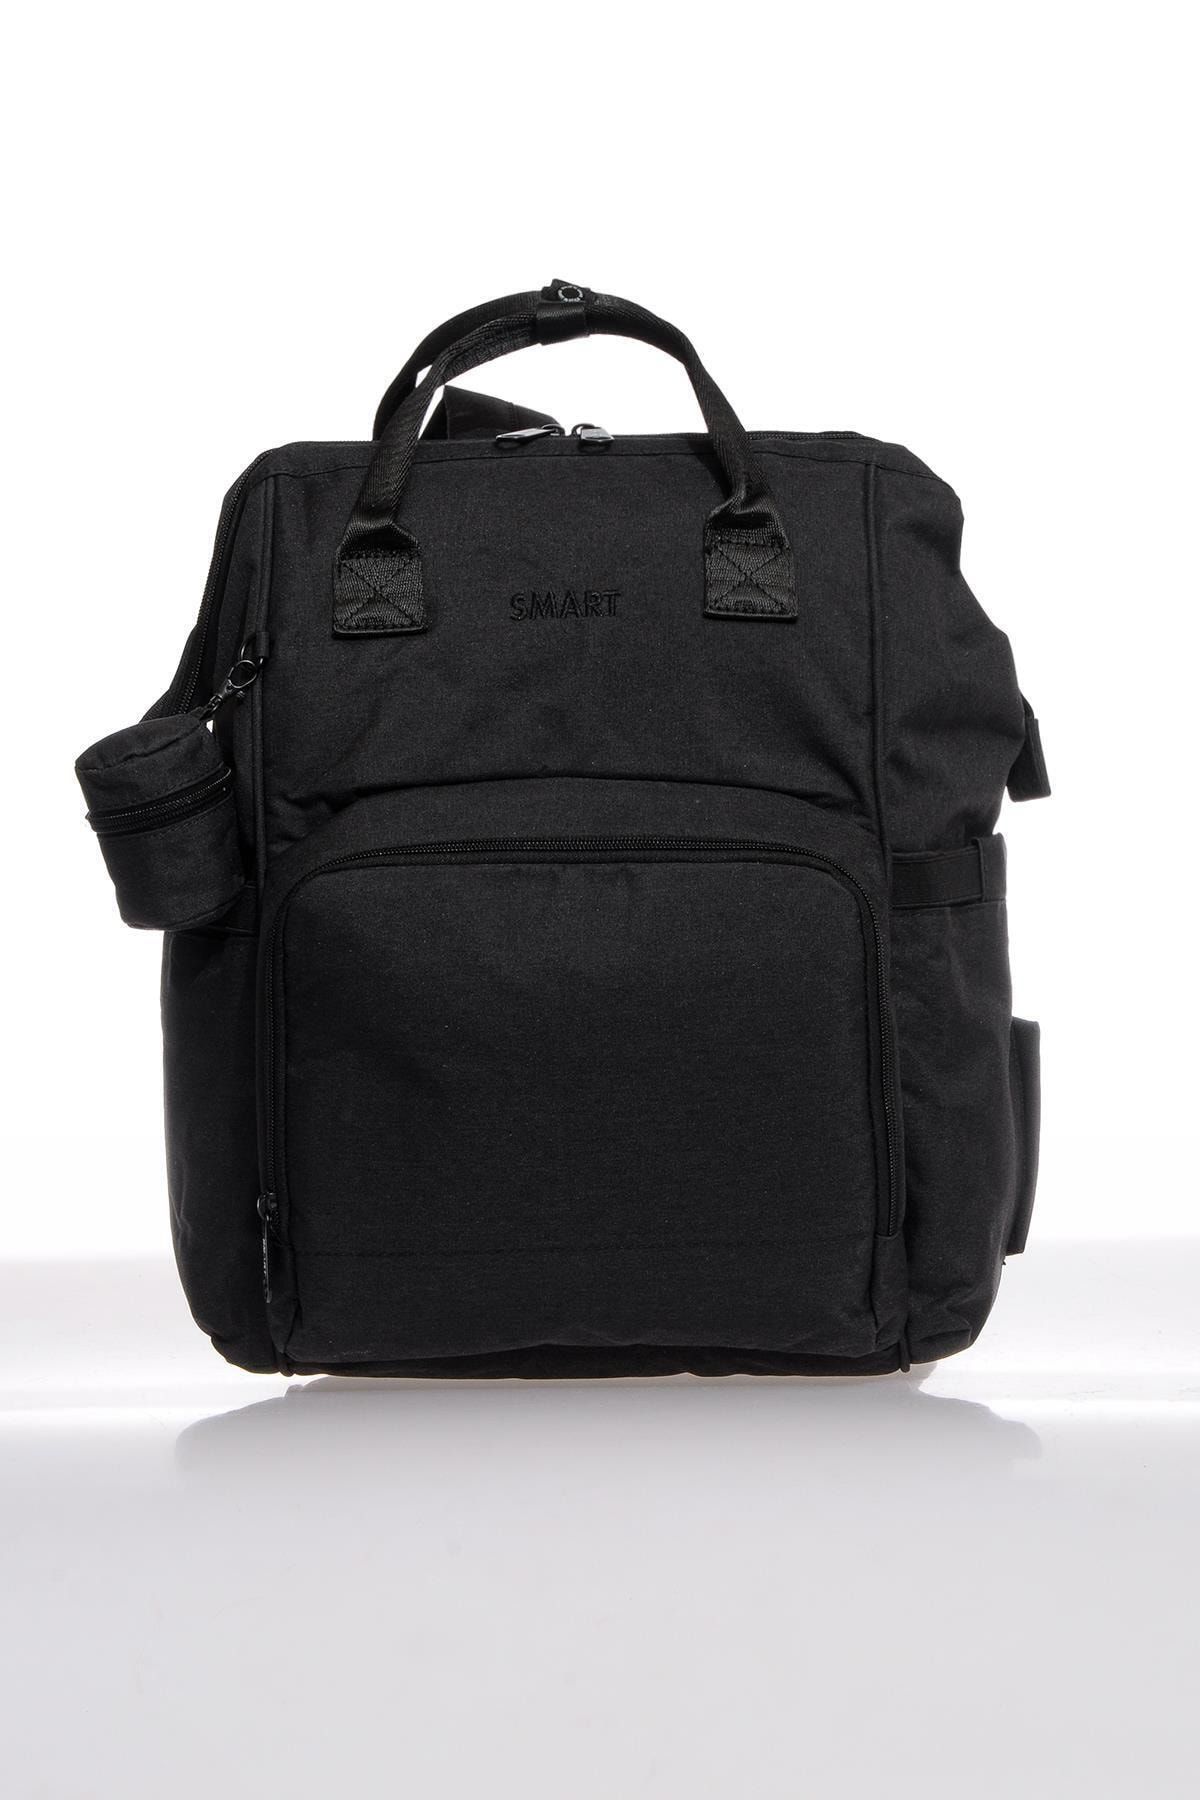 Smart Bags Smb2007-0001 Siyah Kadın Bebek Bakım Sırt Çantası